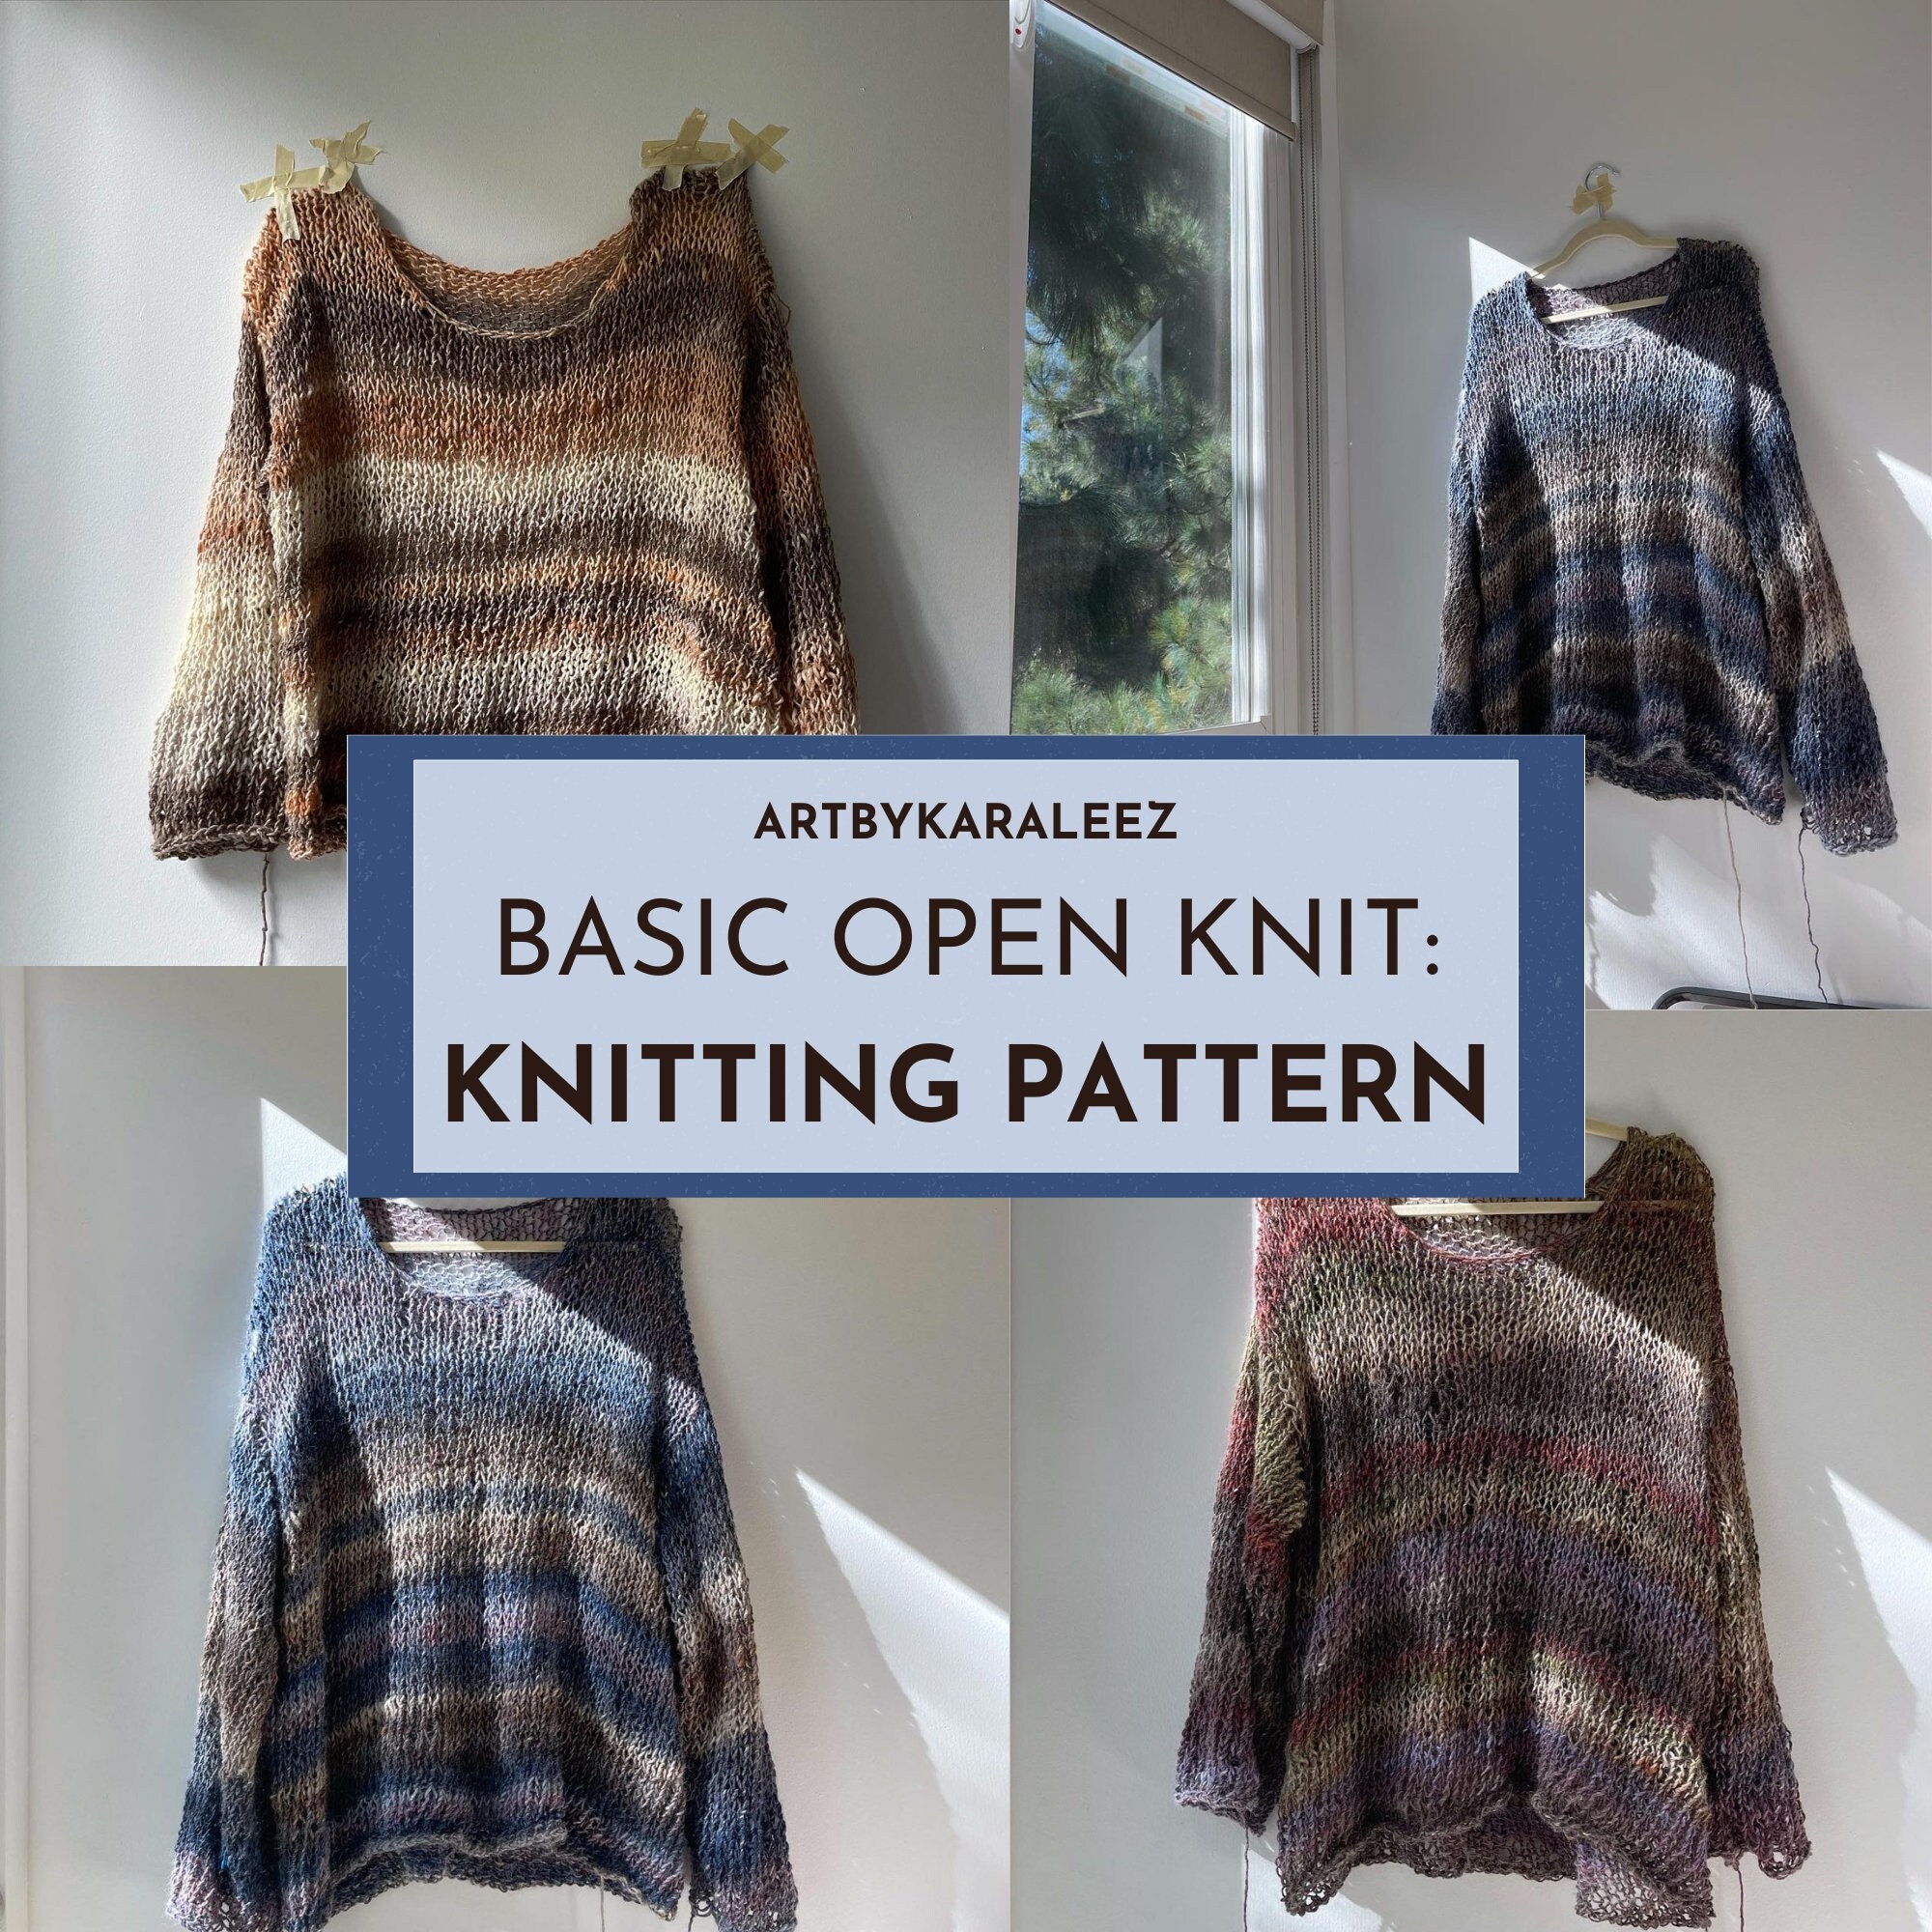 KNITTING PATTERN BASIC Open Knit Sweater image pic